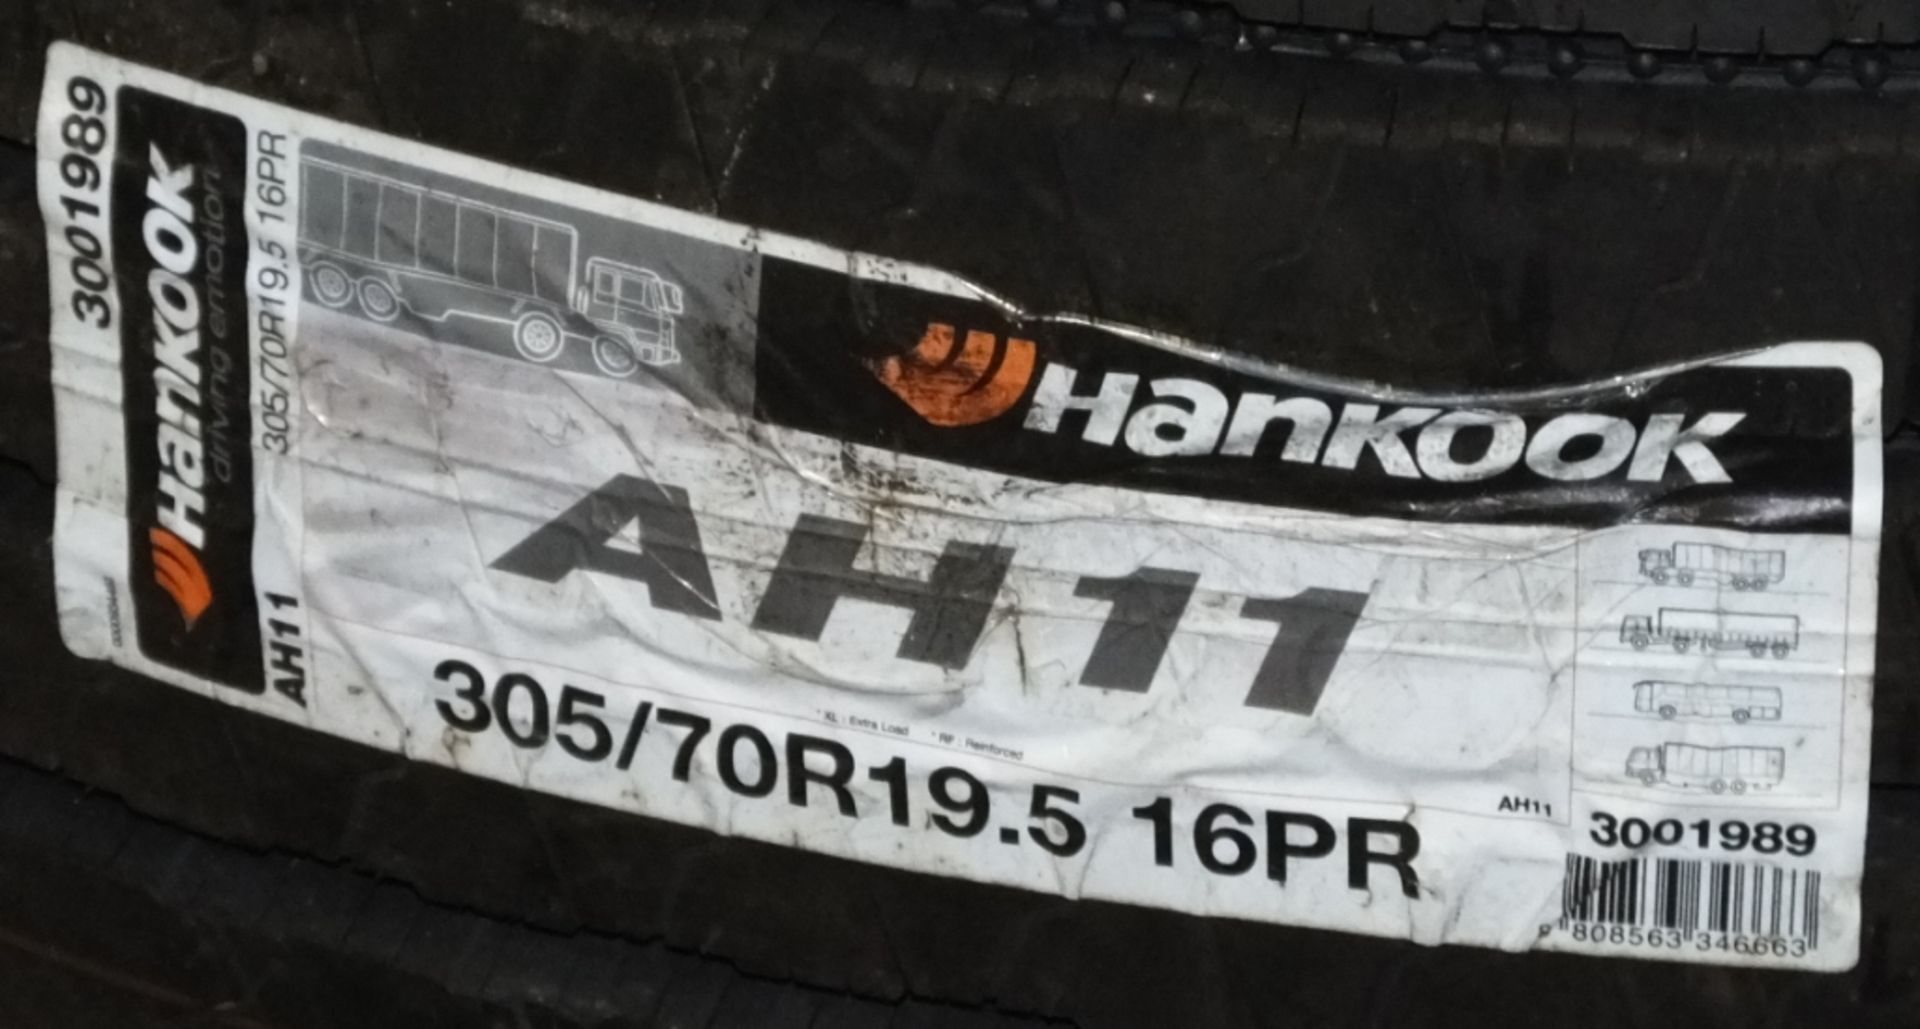 Hankook AH11 305/70R19.5 tyre (new & unused) - Image 5 of 7